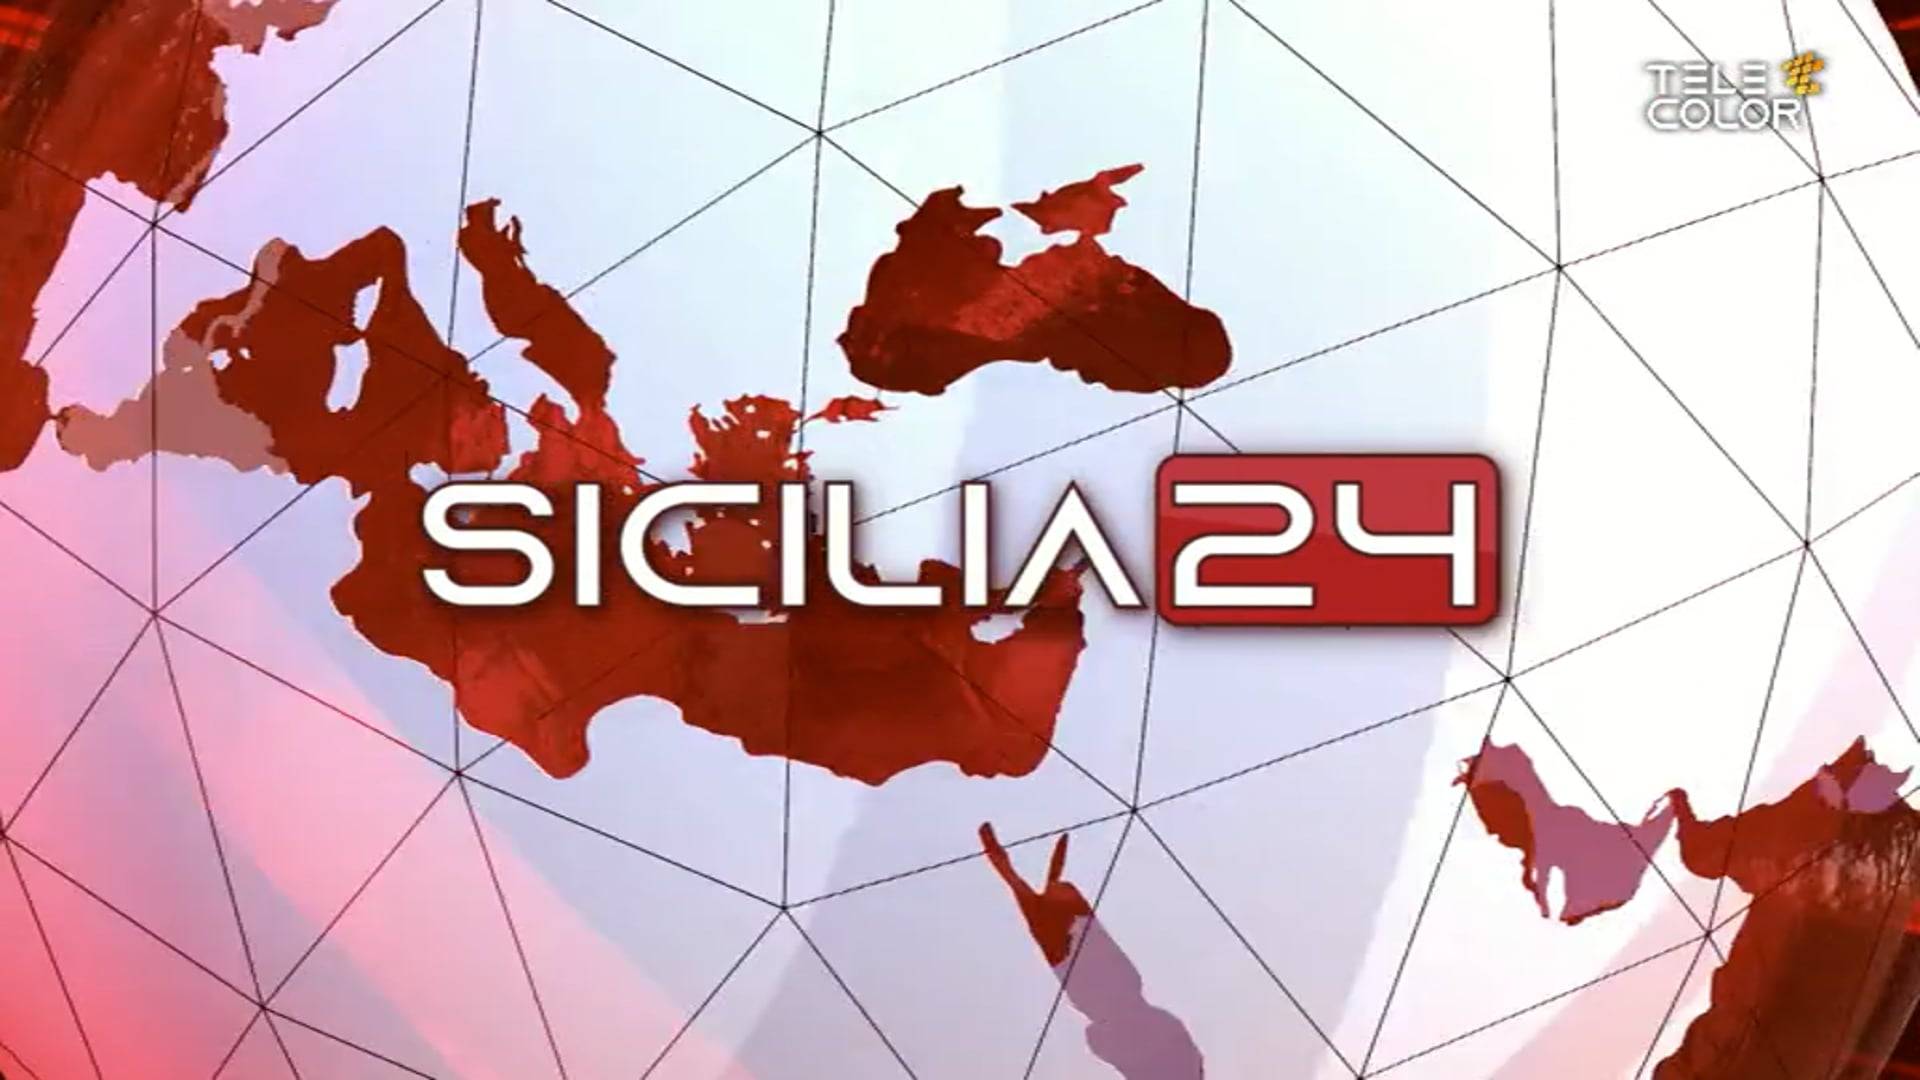 sicilia24-22-aprile-2022-ore-14-vimeo-thumbnail.jpg